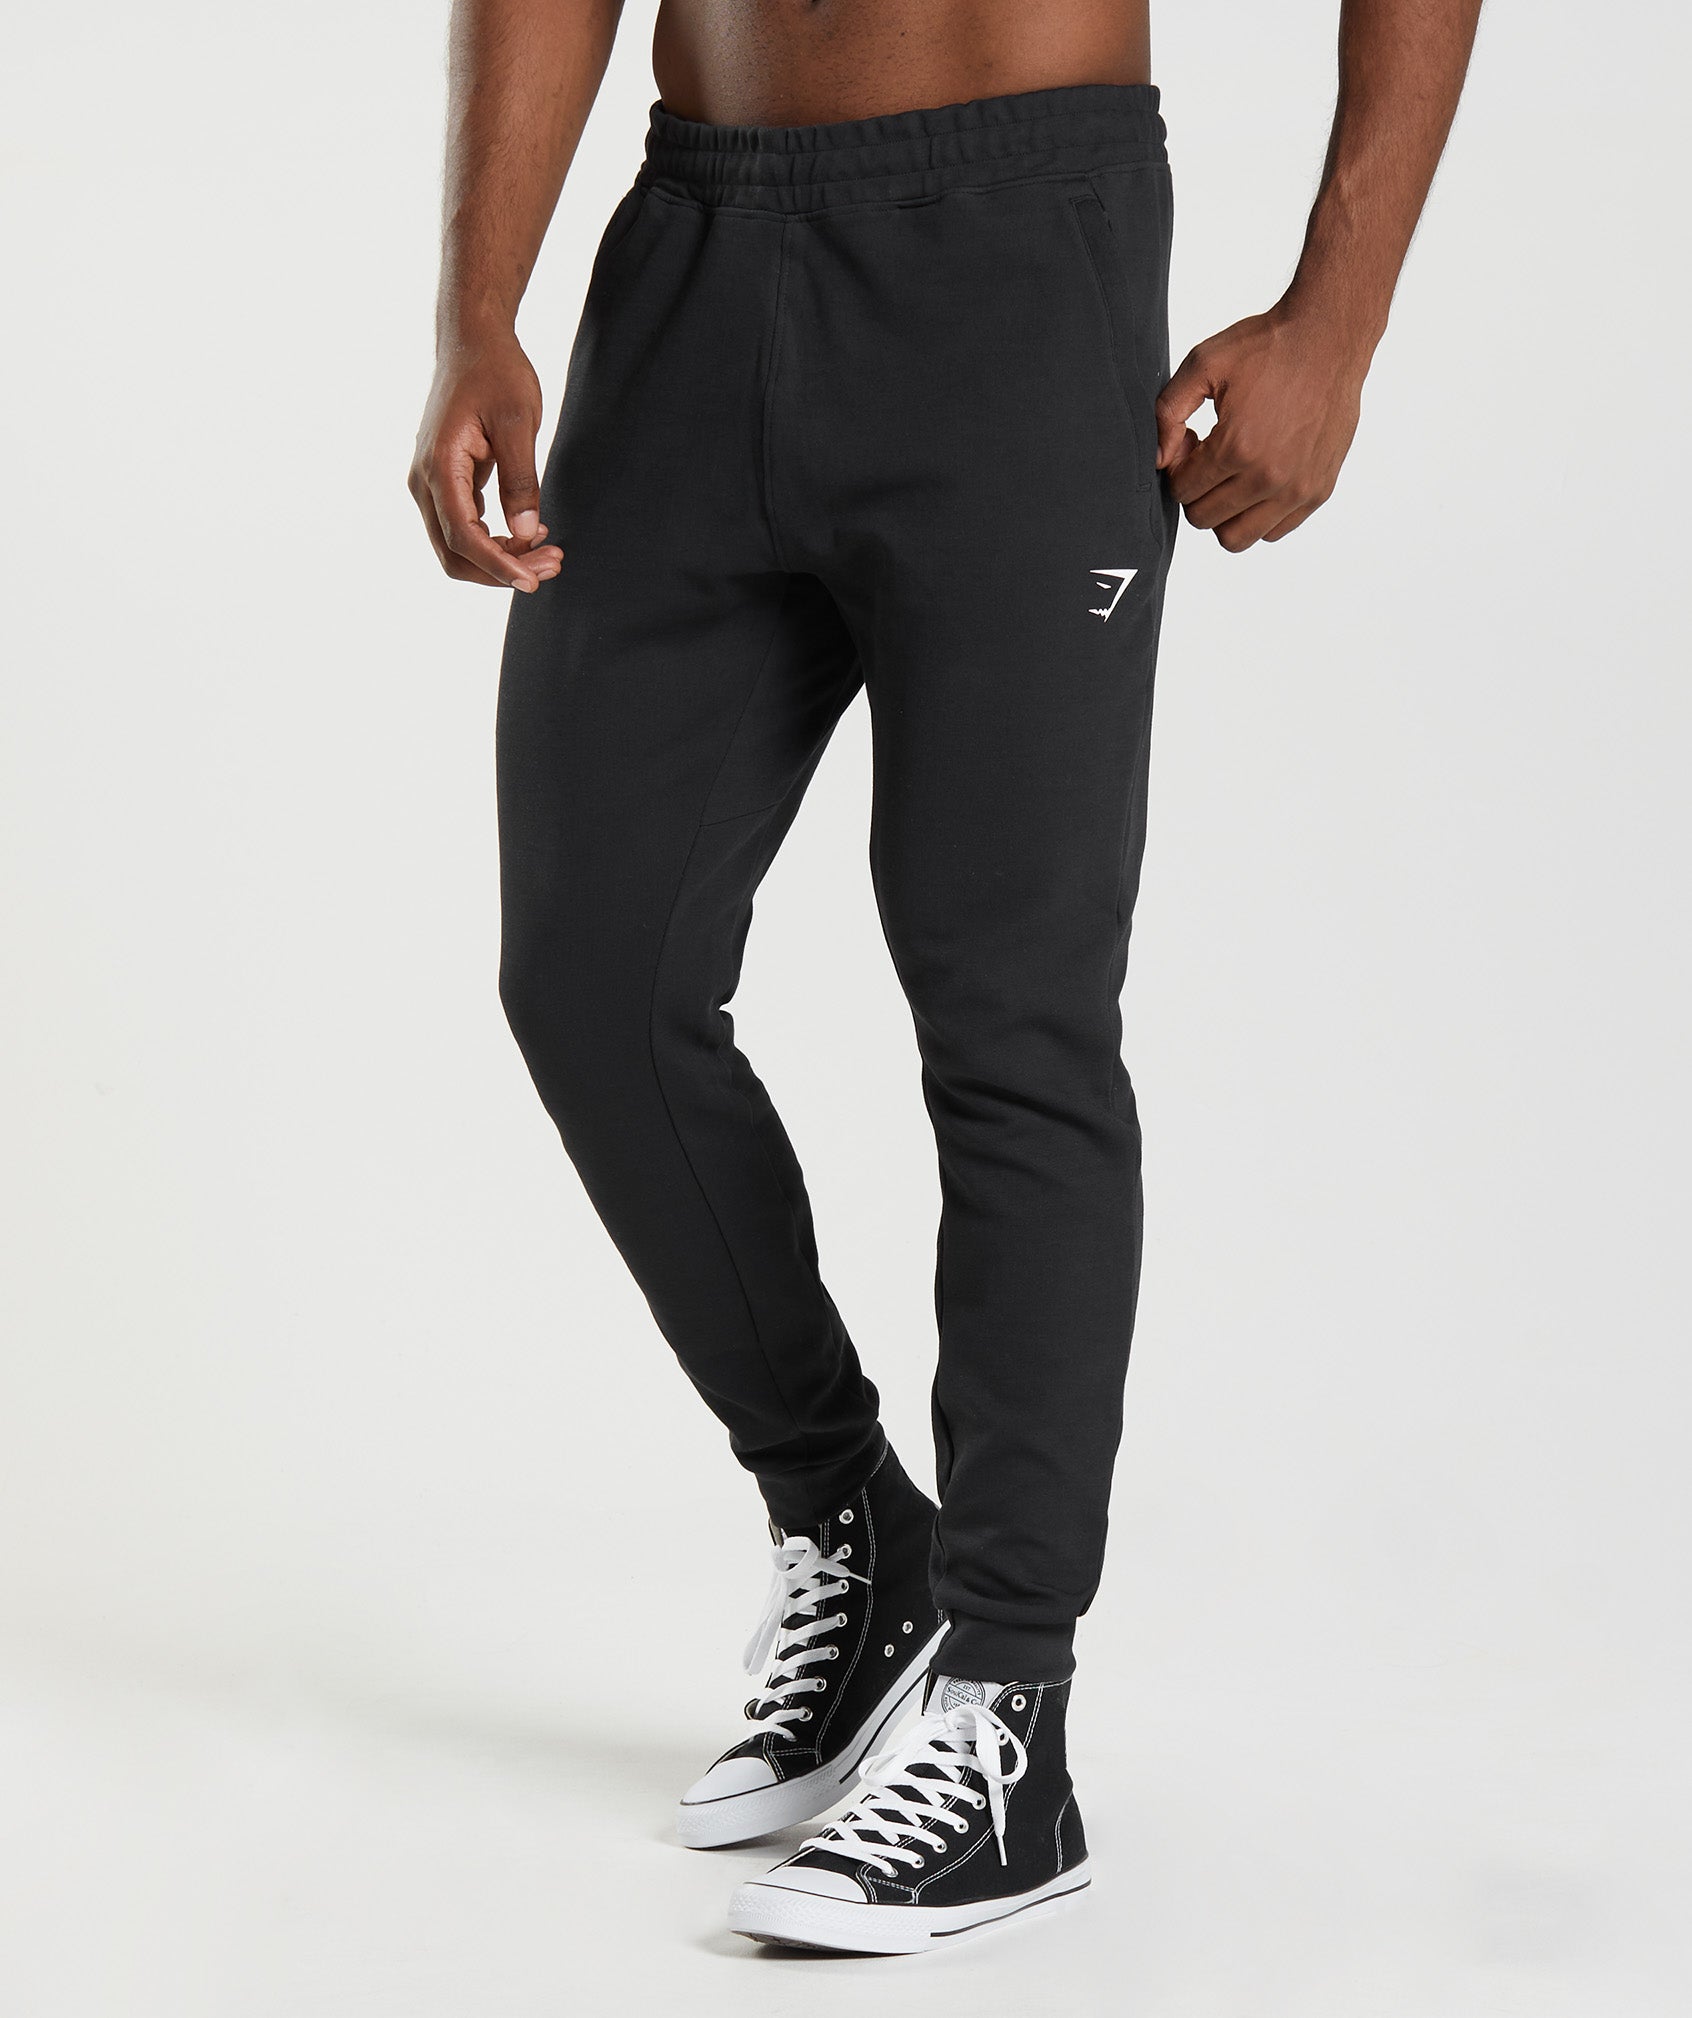 RSQ Mens Active Jogger Pants - BLACK